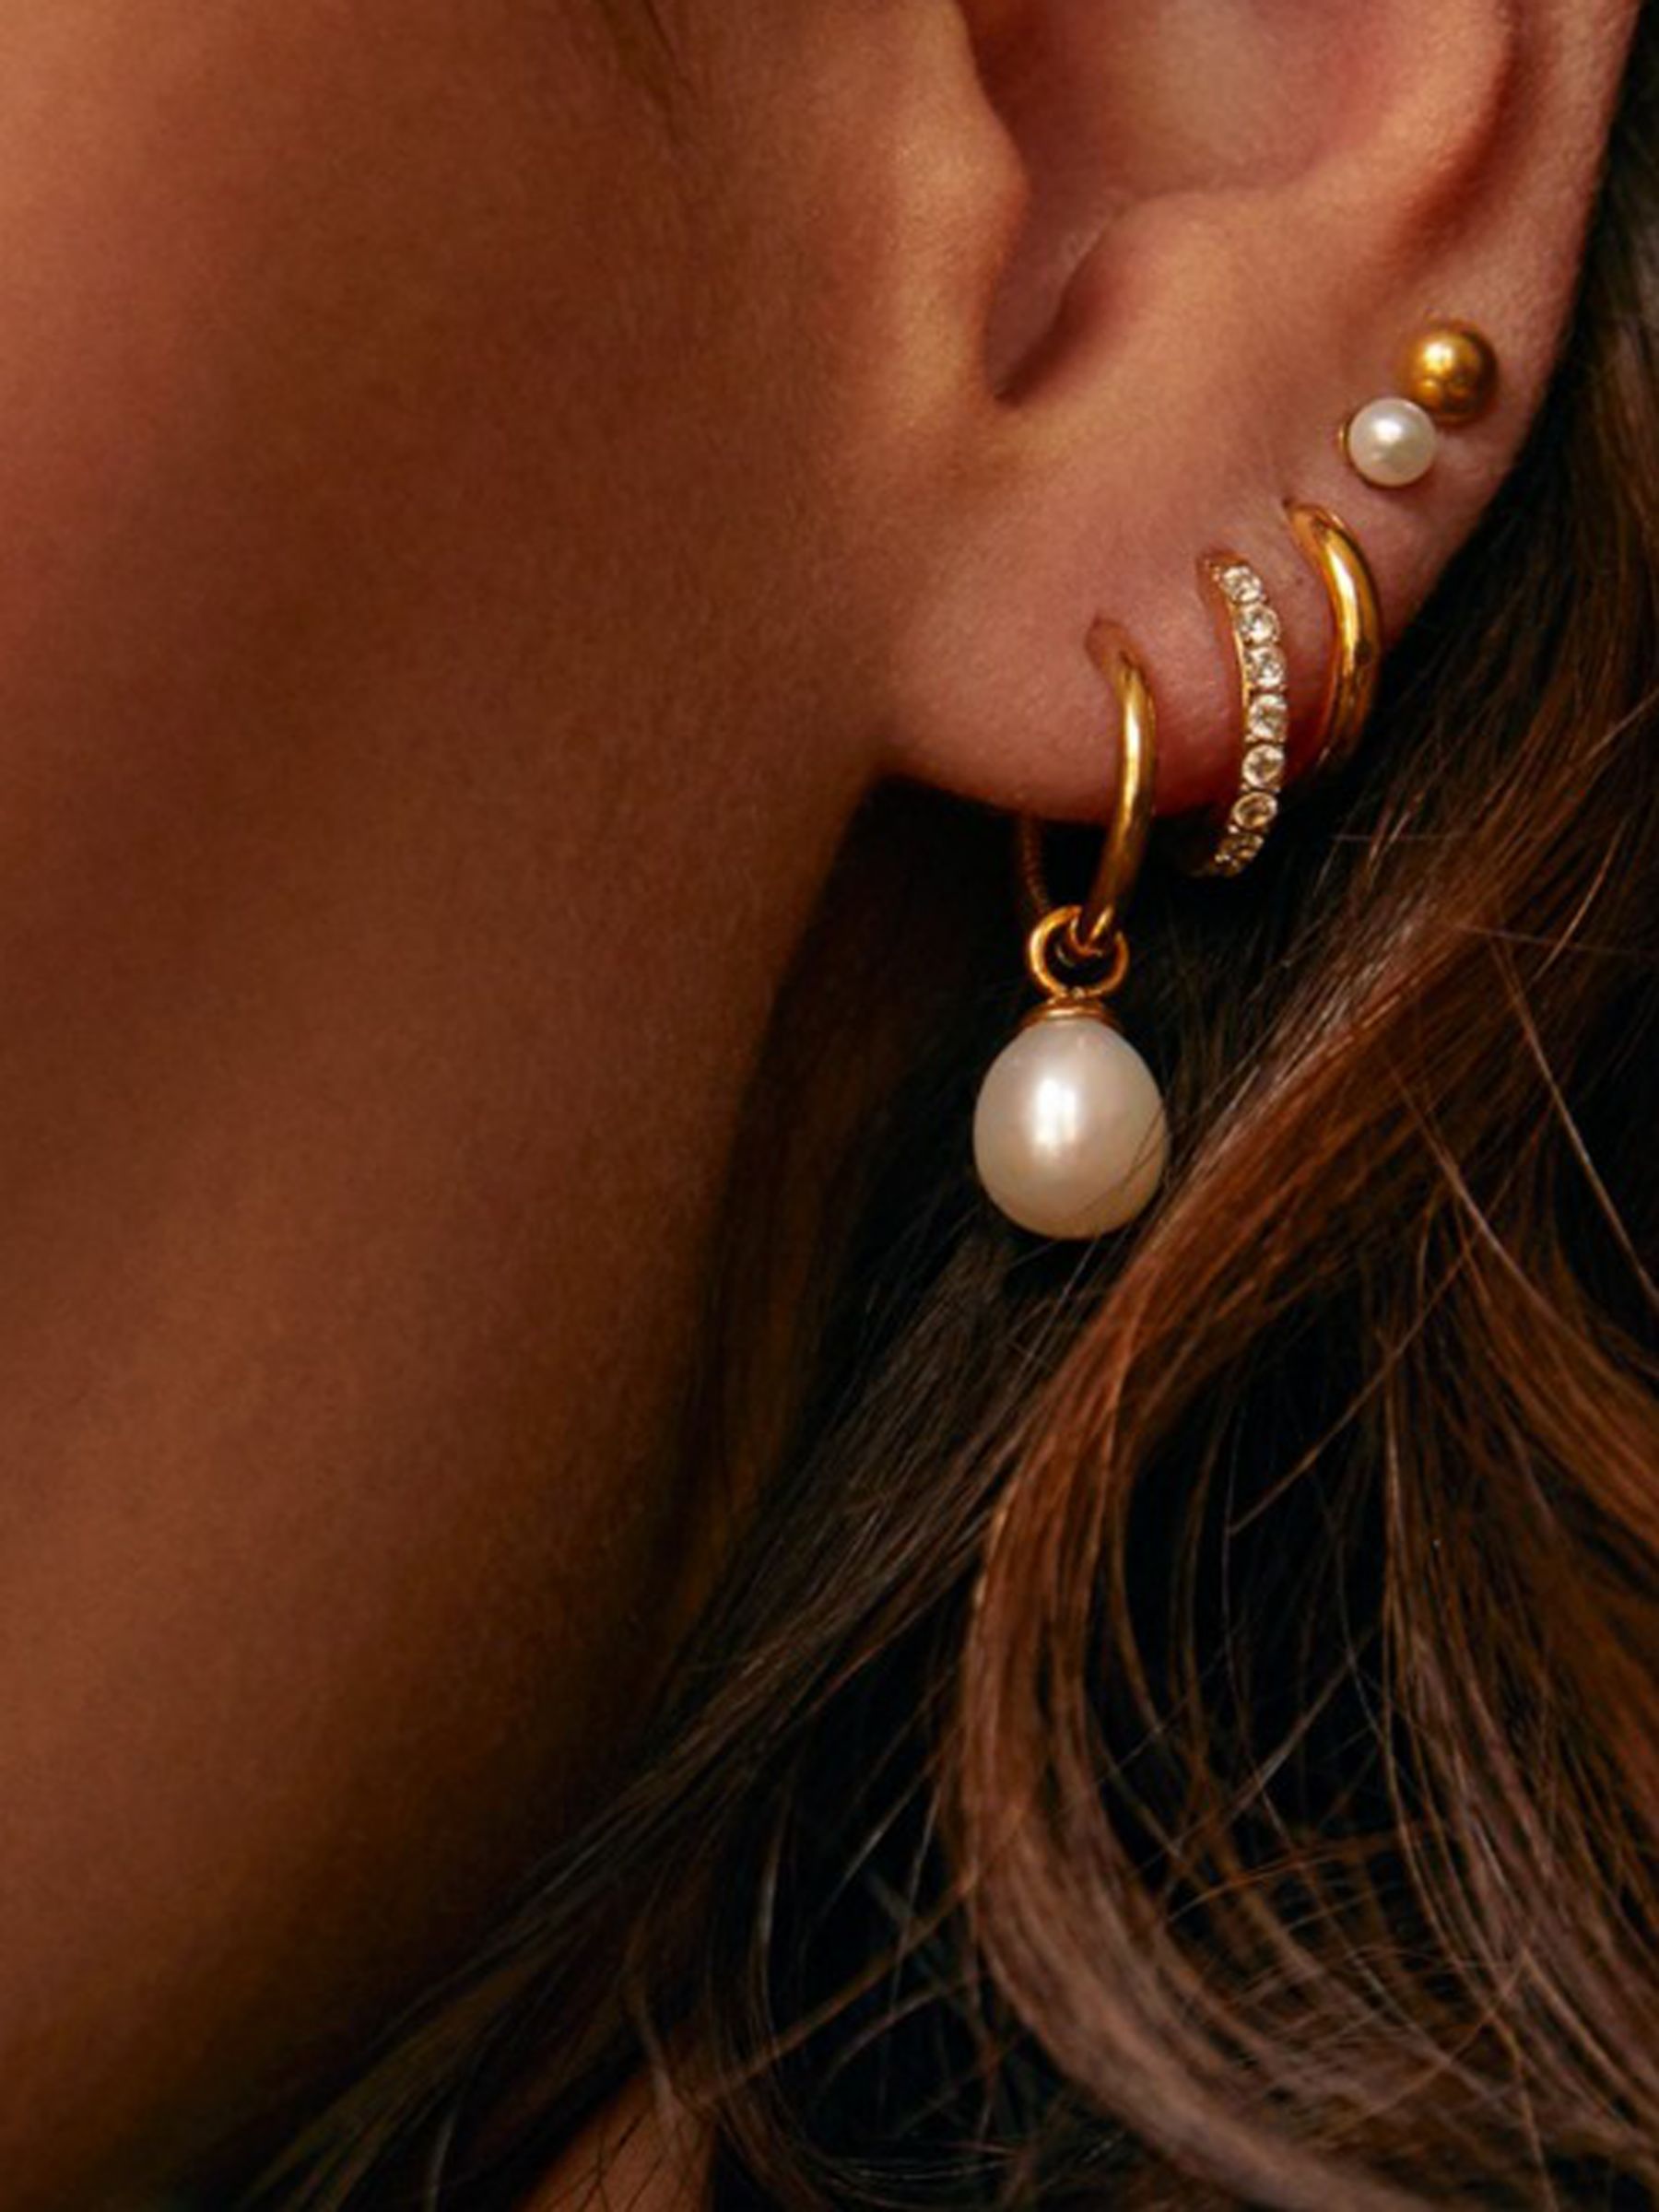 Orelia Luxe Pave Huggie Hoop Earrings, Gold